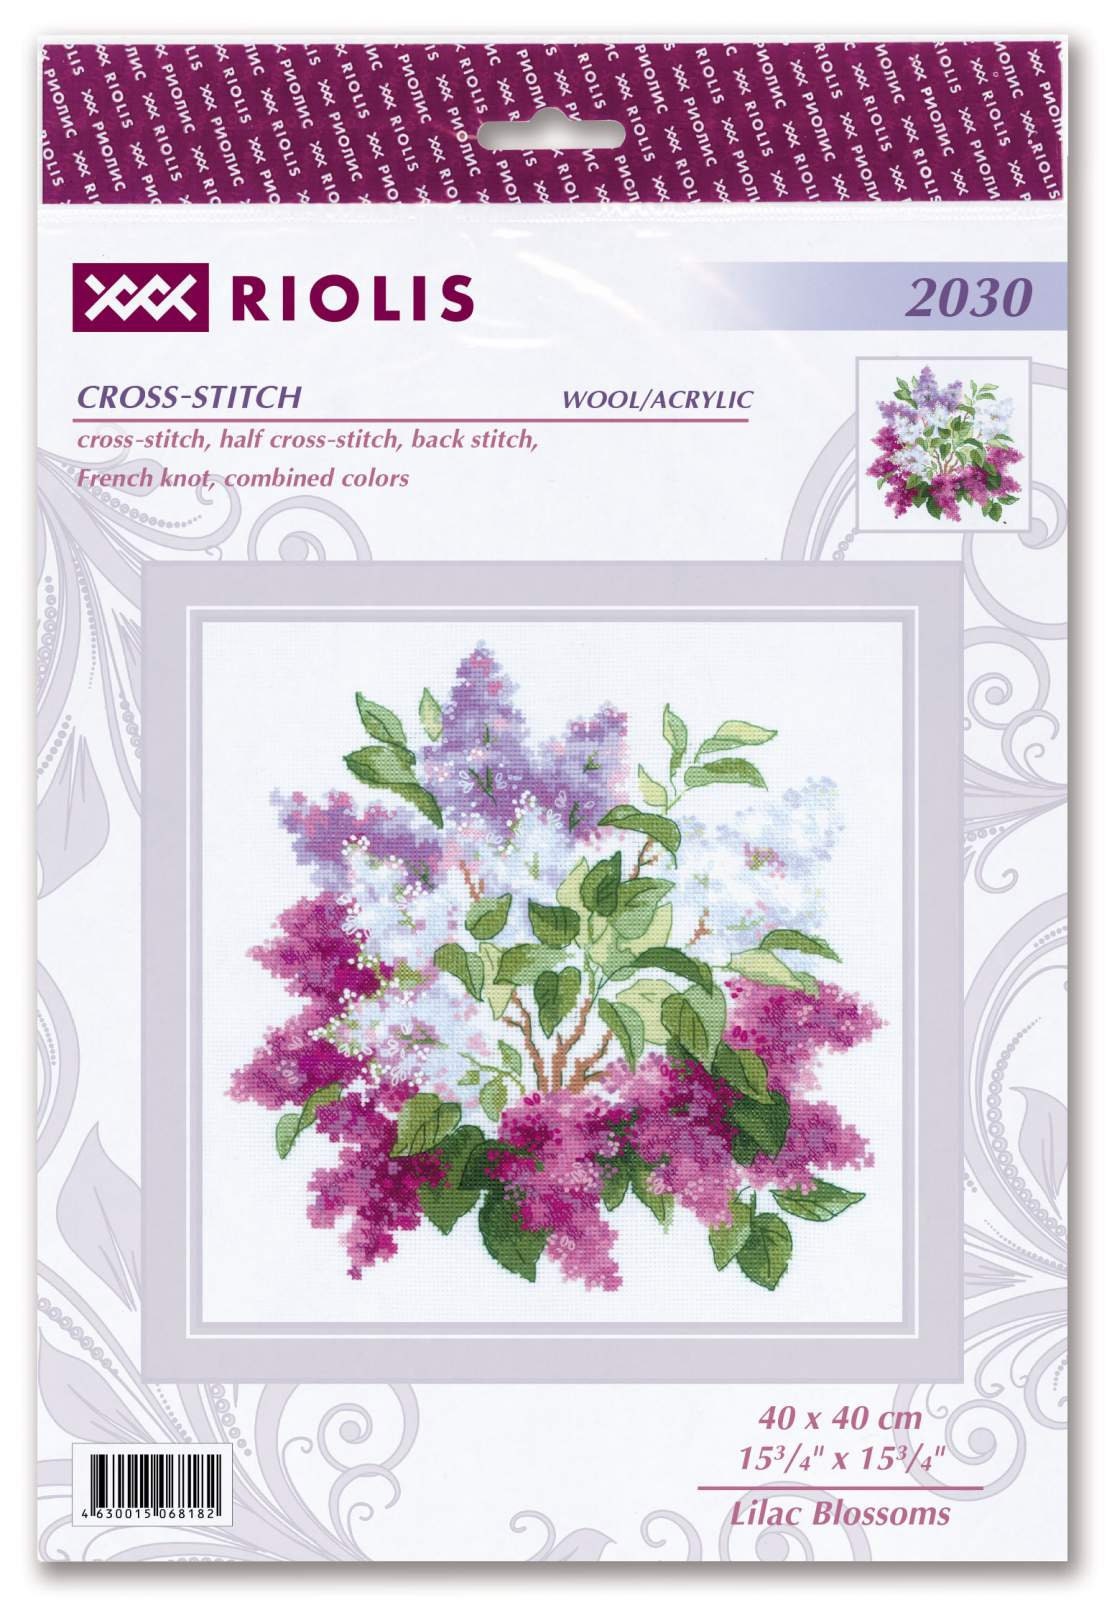 RIOLIS Cross-Stitch Kits - Flower Windowsill Counted Cross-Stitch Craft Kit  - Yahoo Shopping